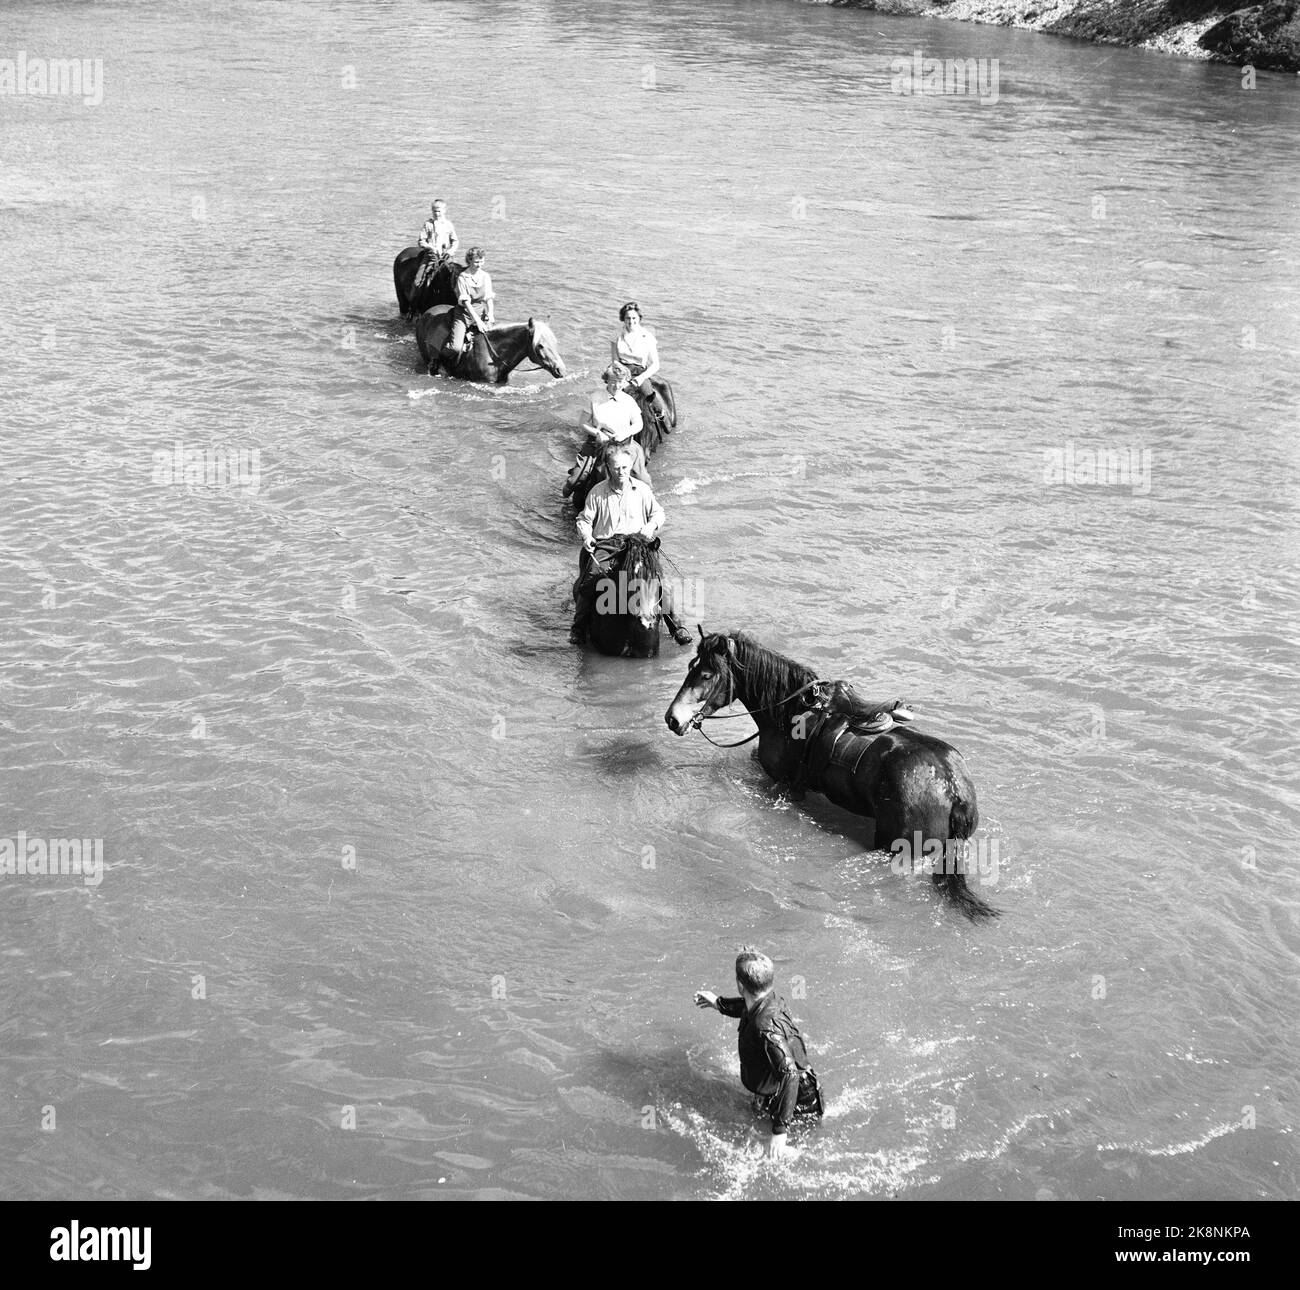 Hardangervidda 19560728 der Tourismusverband organisiert eine Reittour auf Hardangervidda für norwegische und englische Touristen, die noch nie zuvor auf einem Pferd gesessen haben. Die Pferde balancierten gleichmäßig und ruhig über den Flüssen, und einiges davon war nicht ihre Schuld. Das Wasser war nicht ideal zum Schwimmen, die Temperatur lag unter 0. Foto; Aage Storløkken / Aktuell / NTB Stockfoto